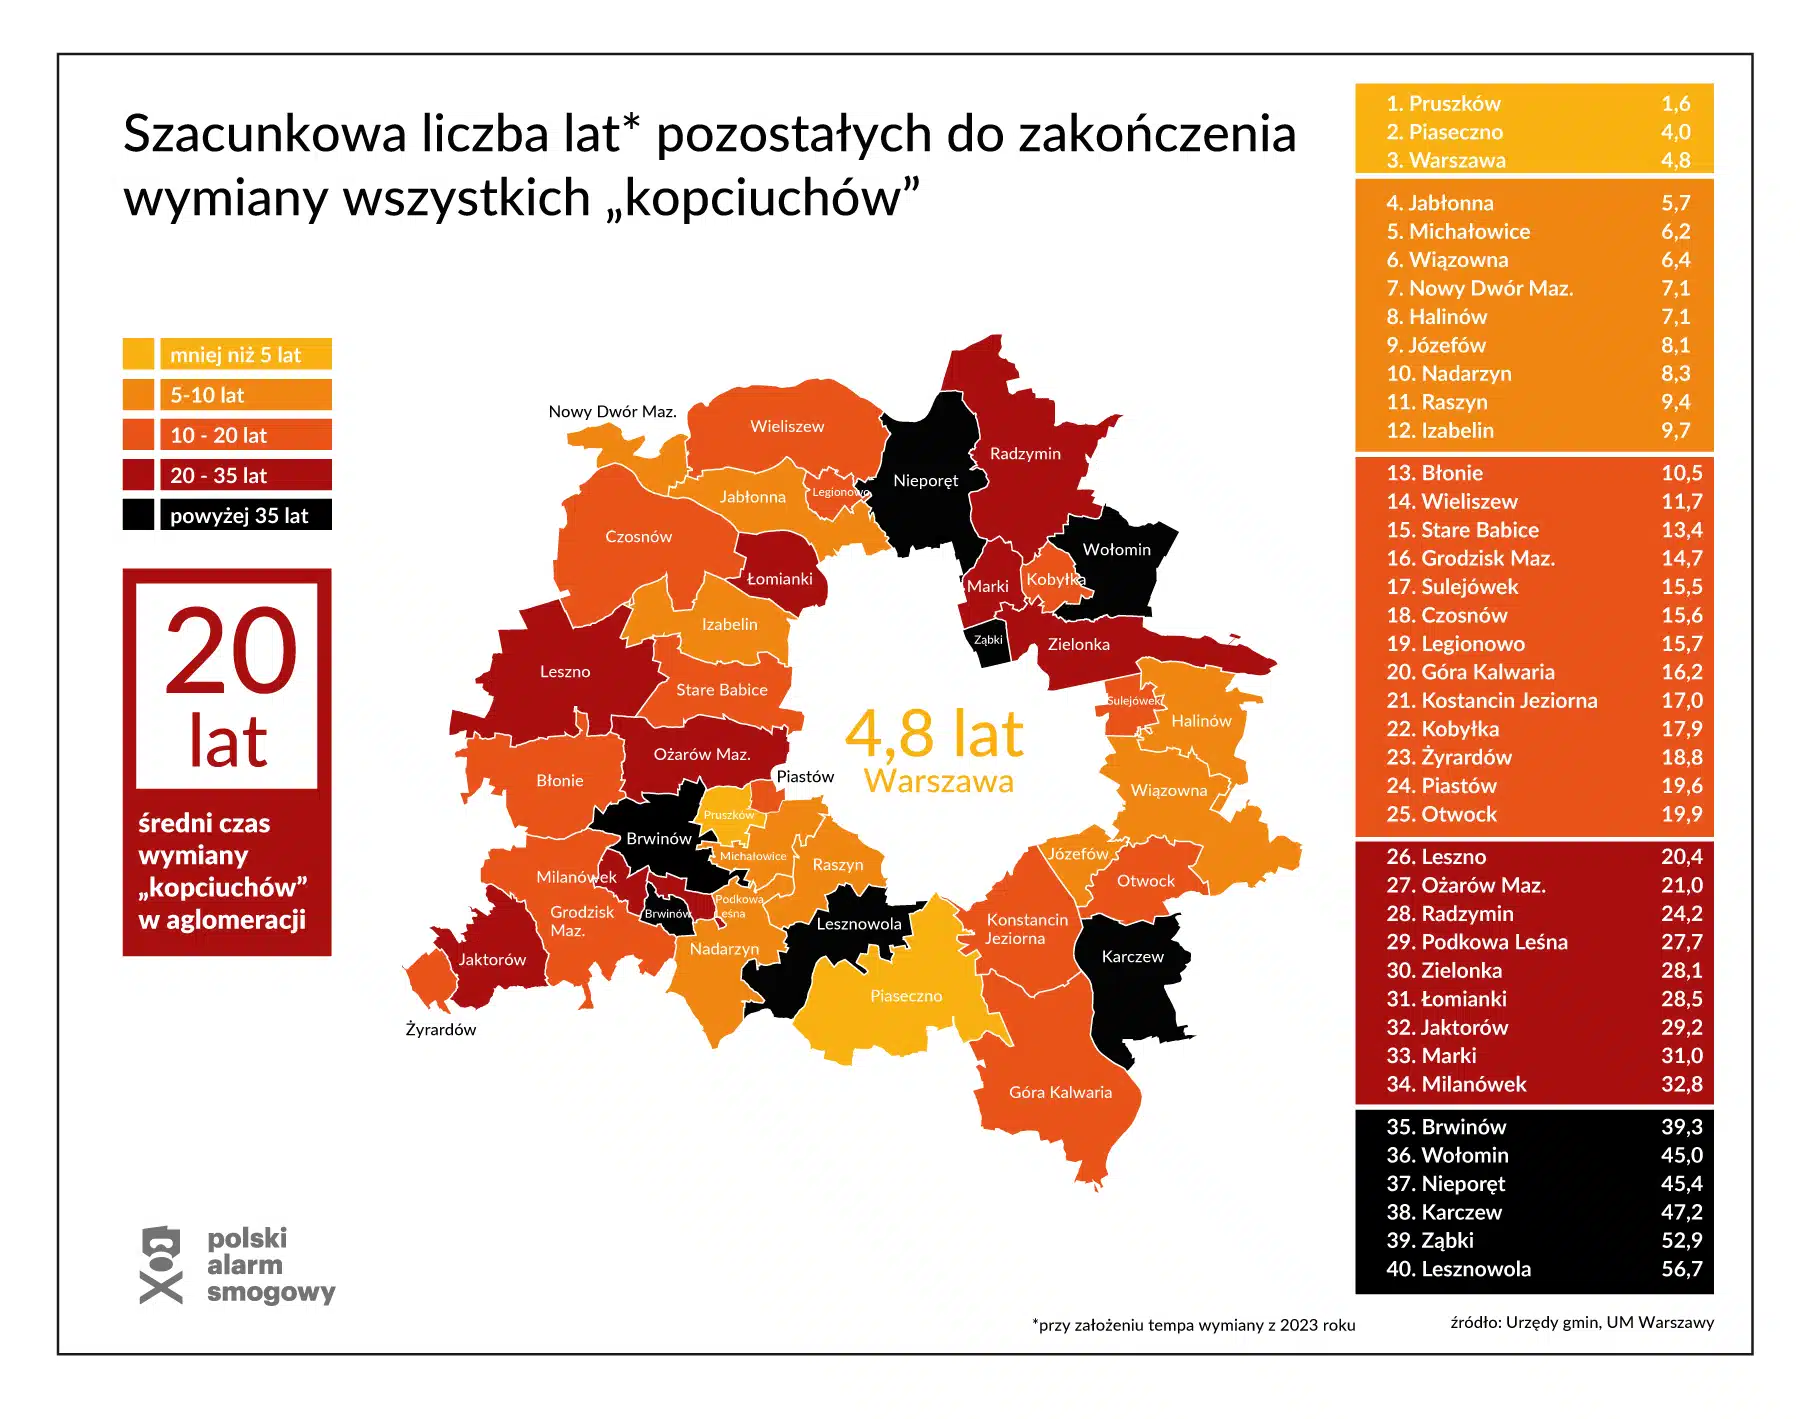 Mapa Warszawy i okolicznych miejscowości z prognozowaną liczbą lat do końca wymiany kopciuchów.